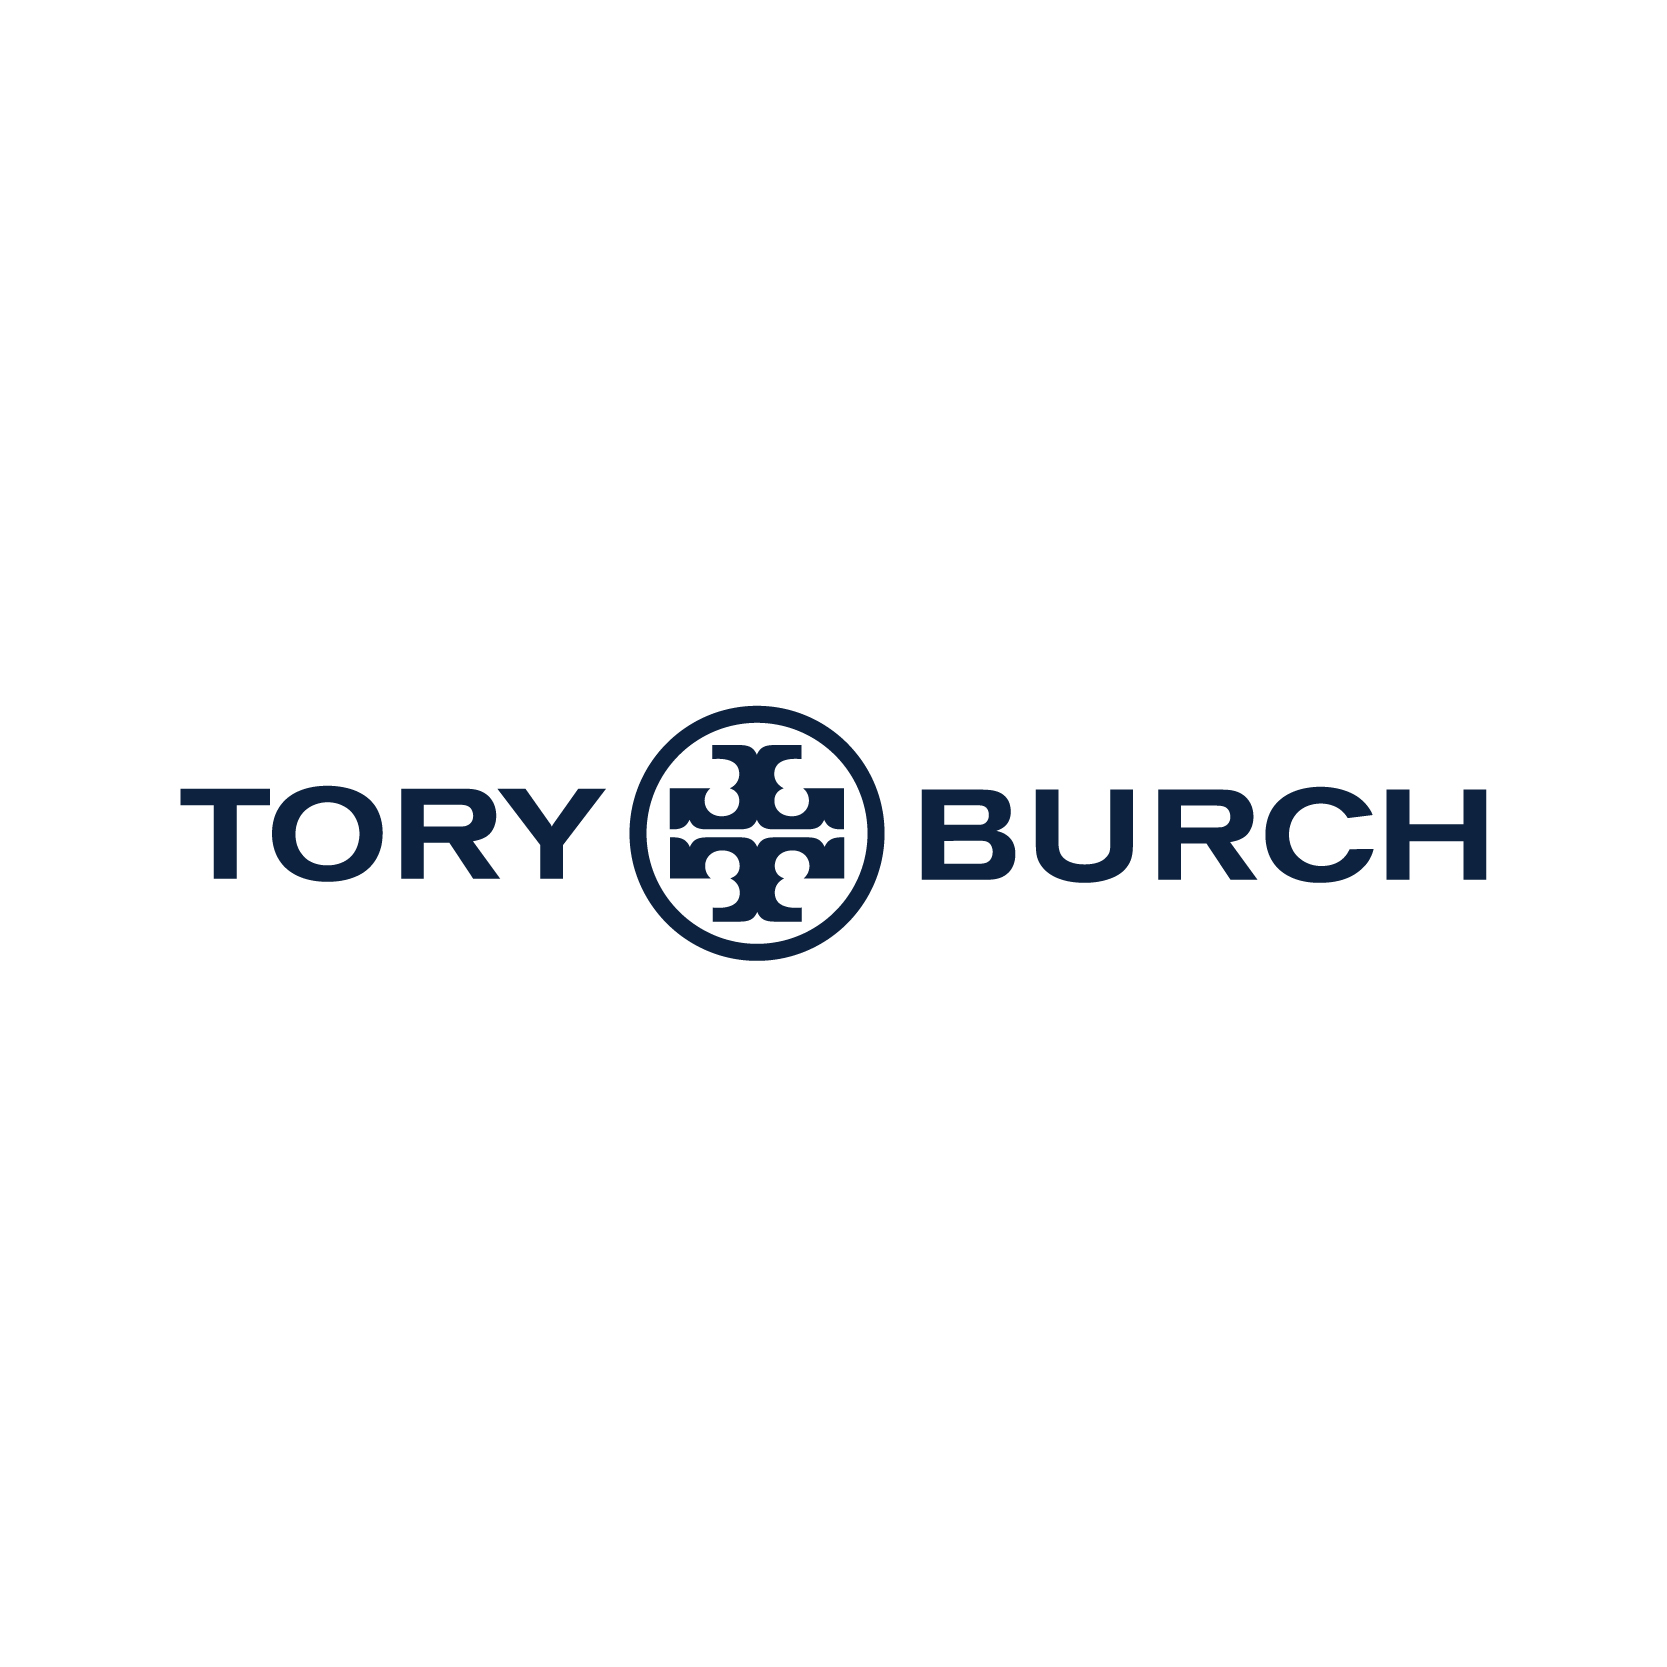 Tory Burch купони 